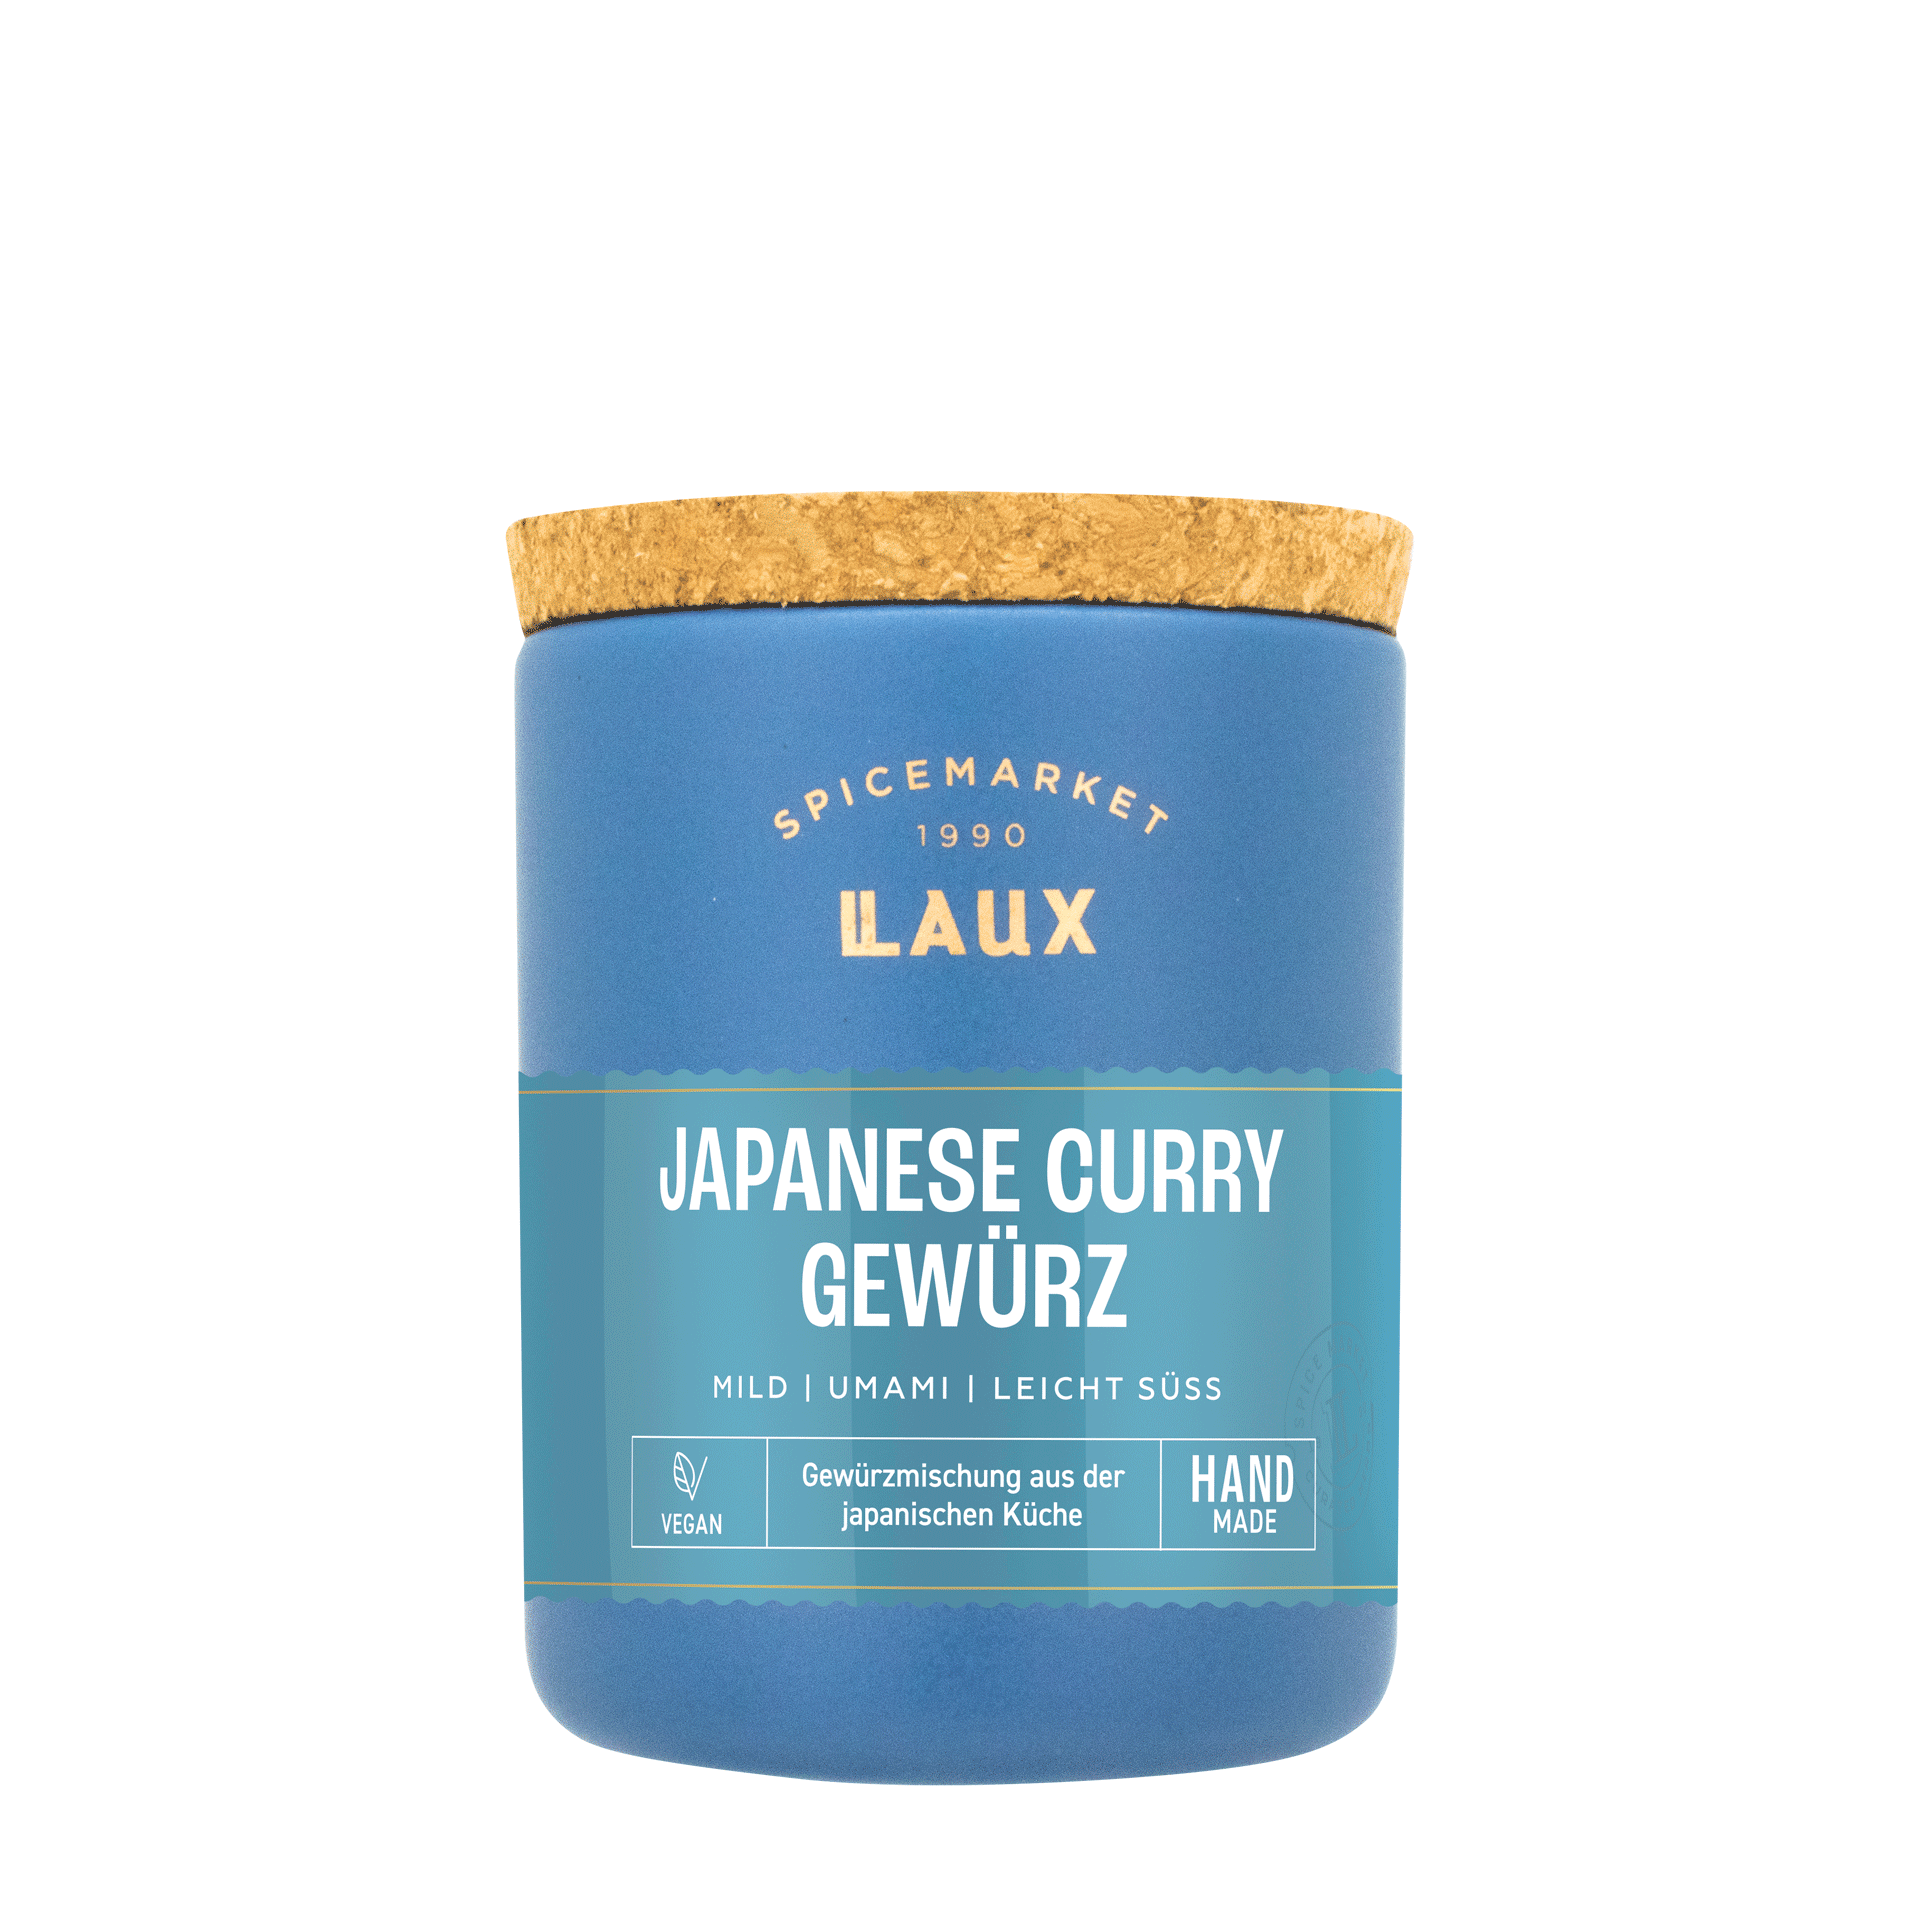 Japanese Curry Gewürz im Keramiktopf